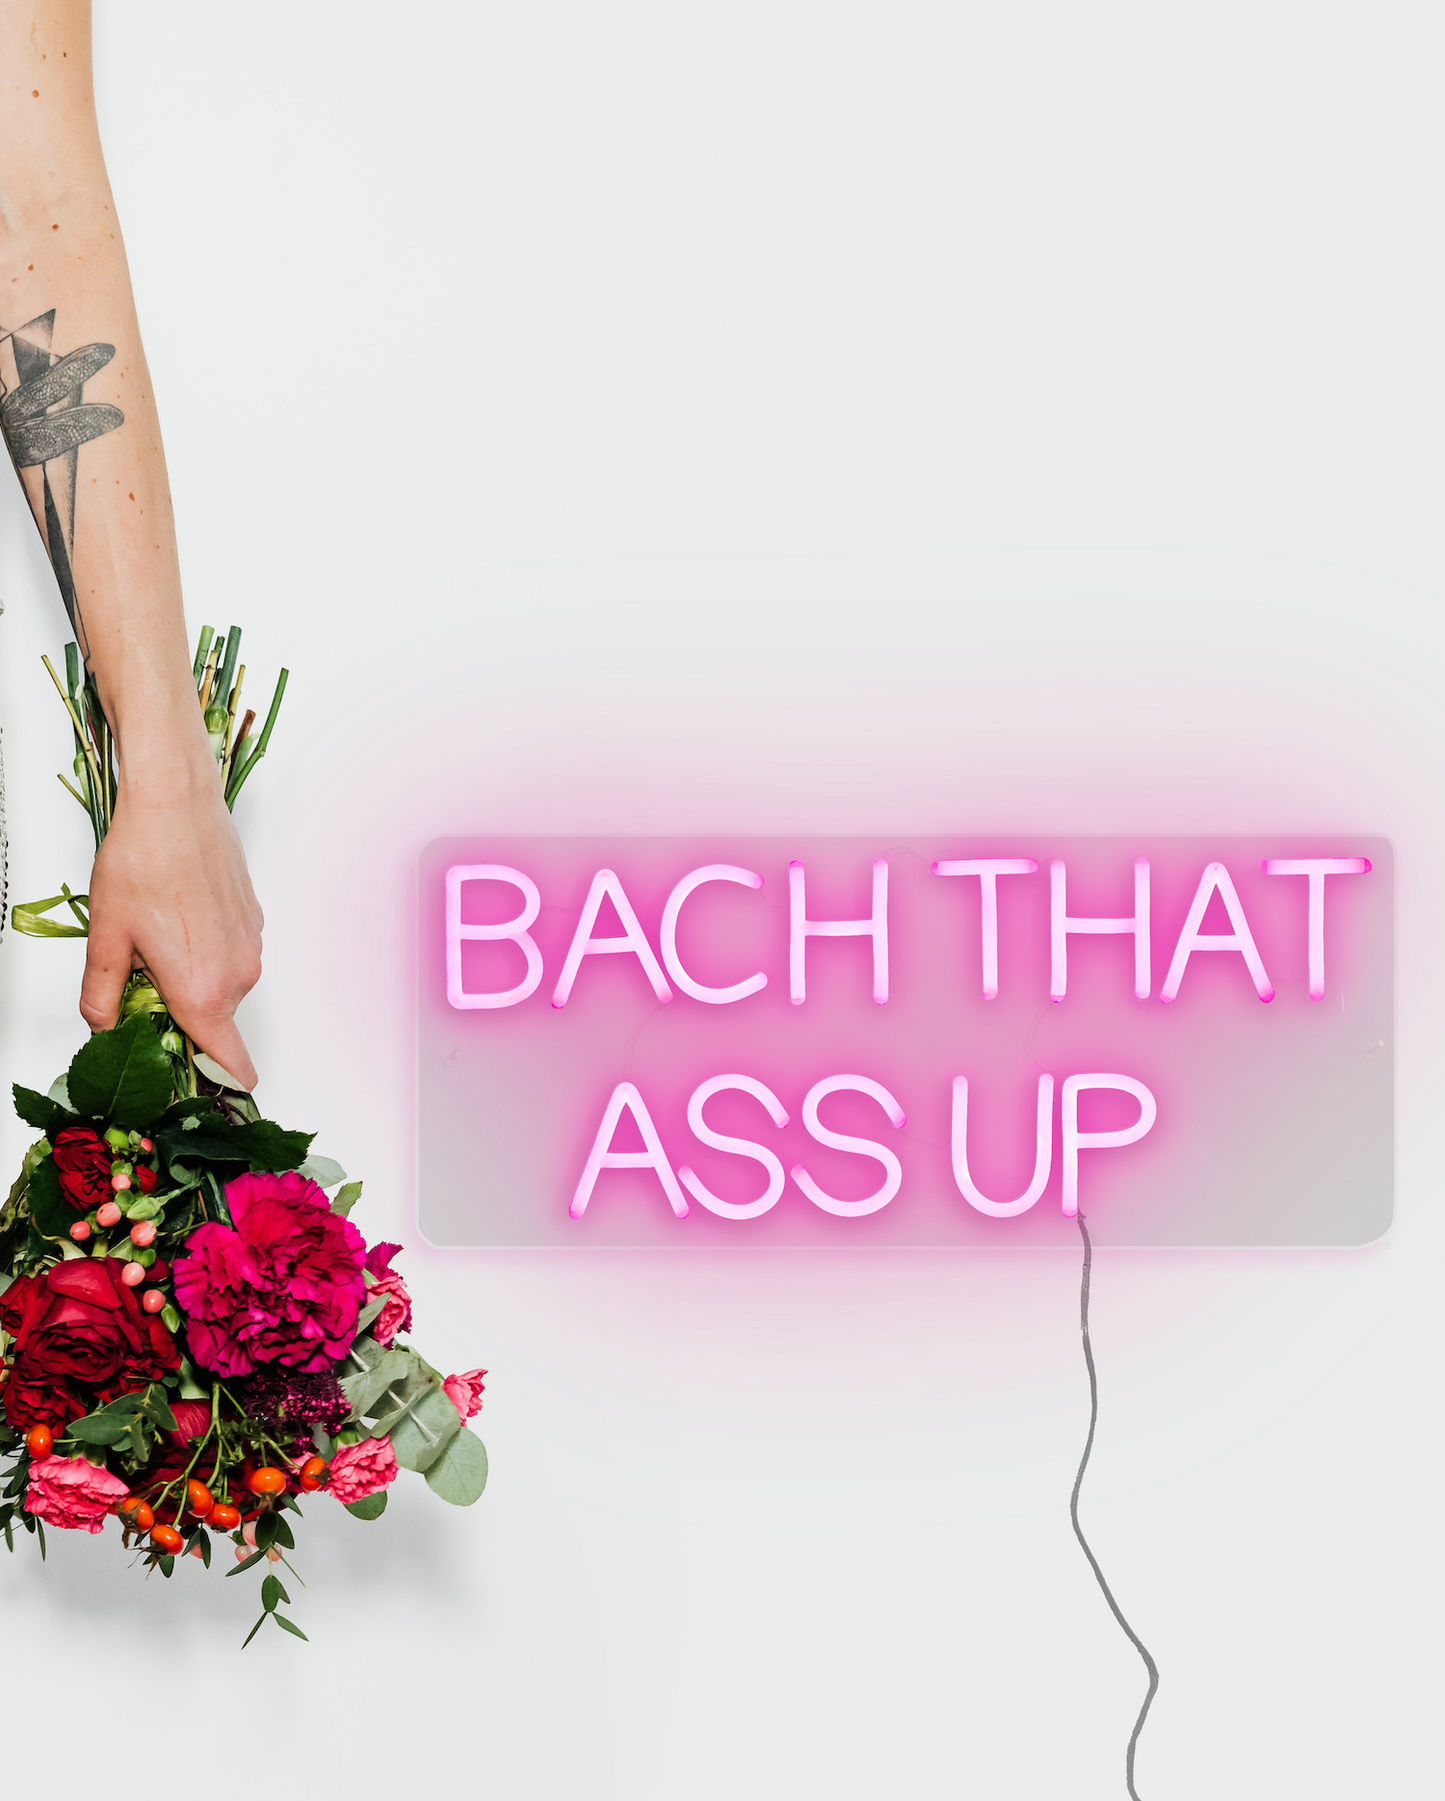 Bach That Ass Up - Neon Rental